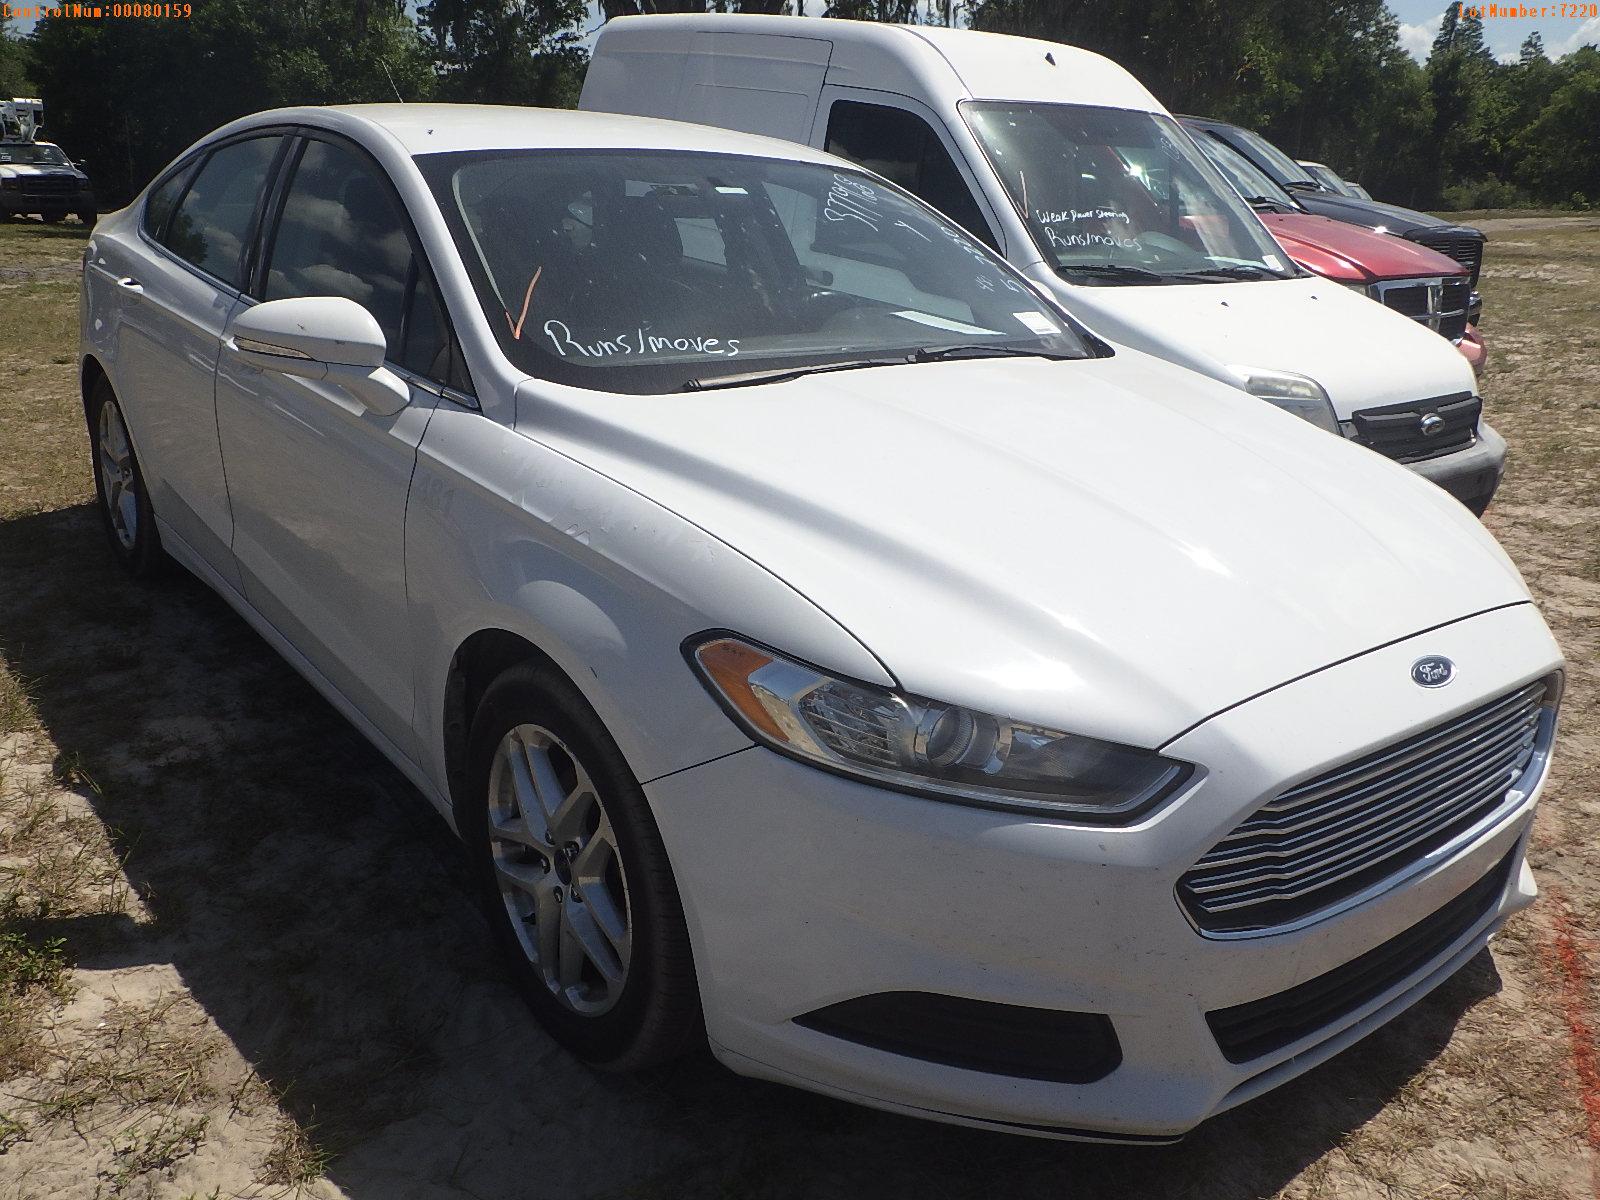 5-07220 (Cars-Sedan 4D)  Seller:Private/Dealer 2014 FORD FUSION